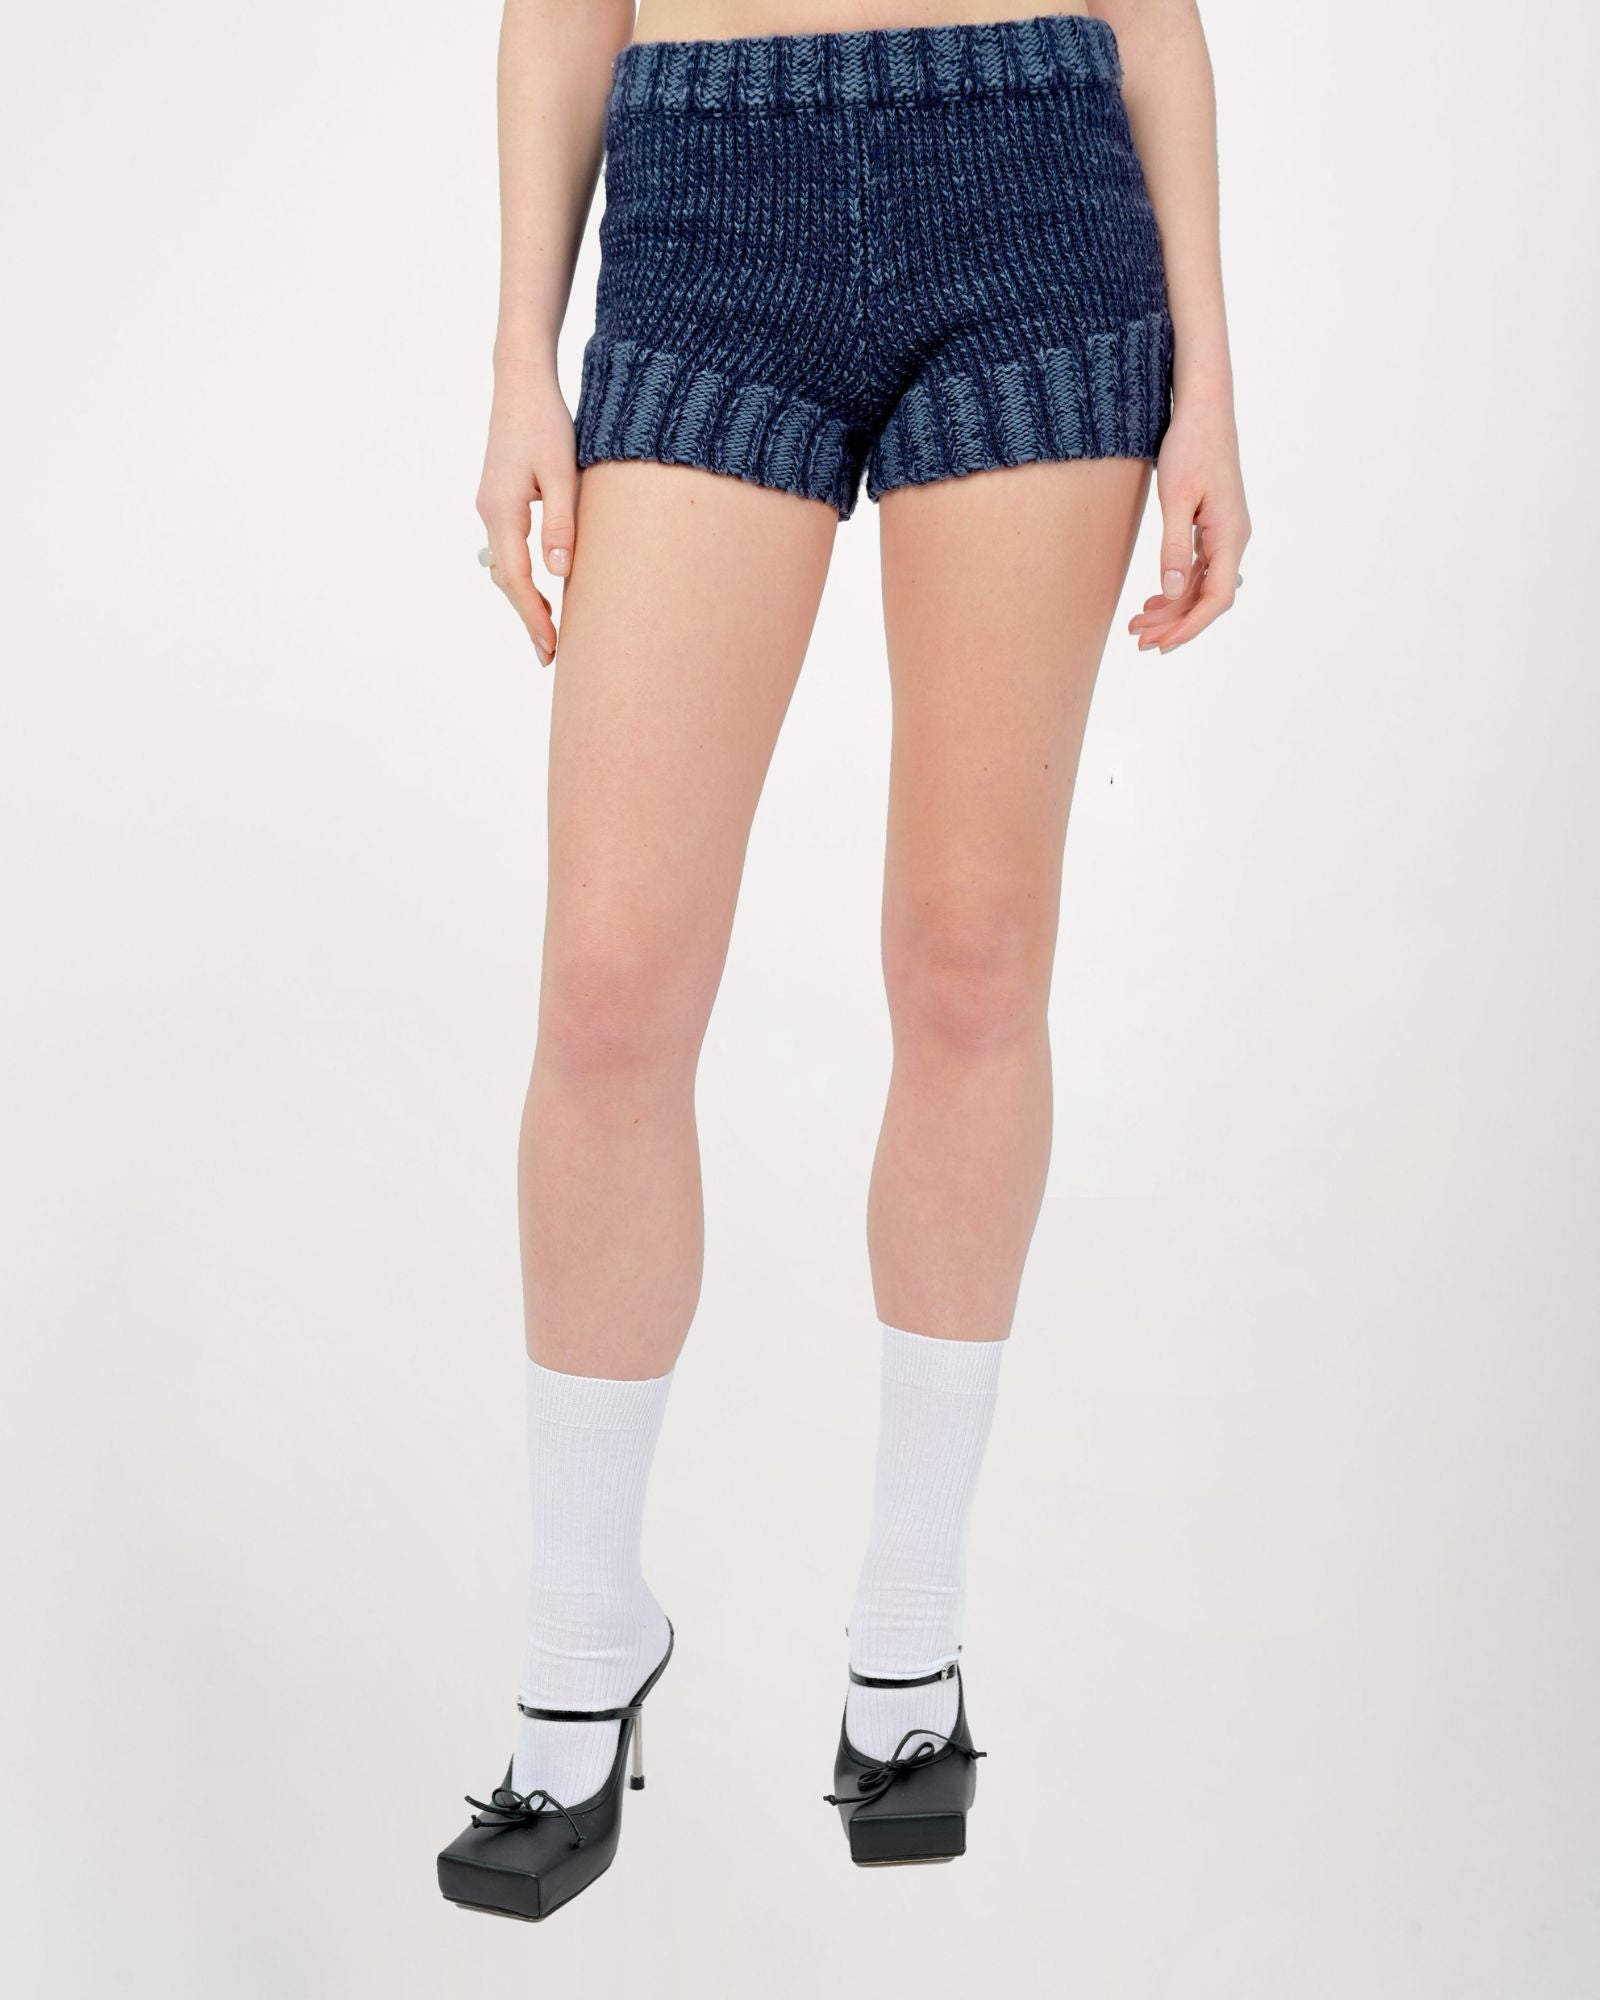 Model is wearing a size Small in Zaya Knit Shorts by Aseye Studio